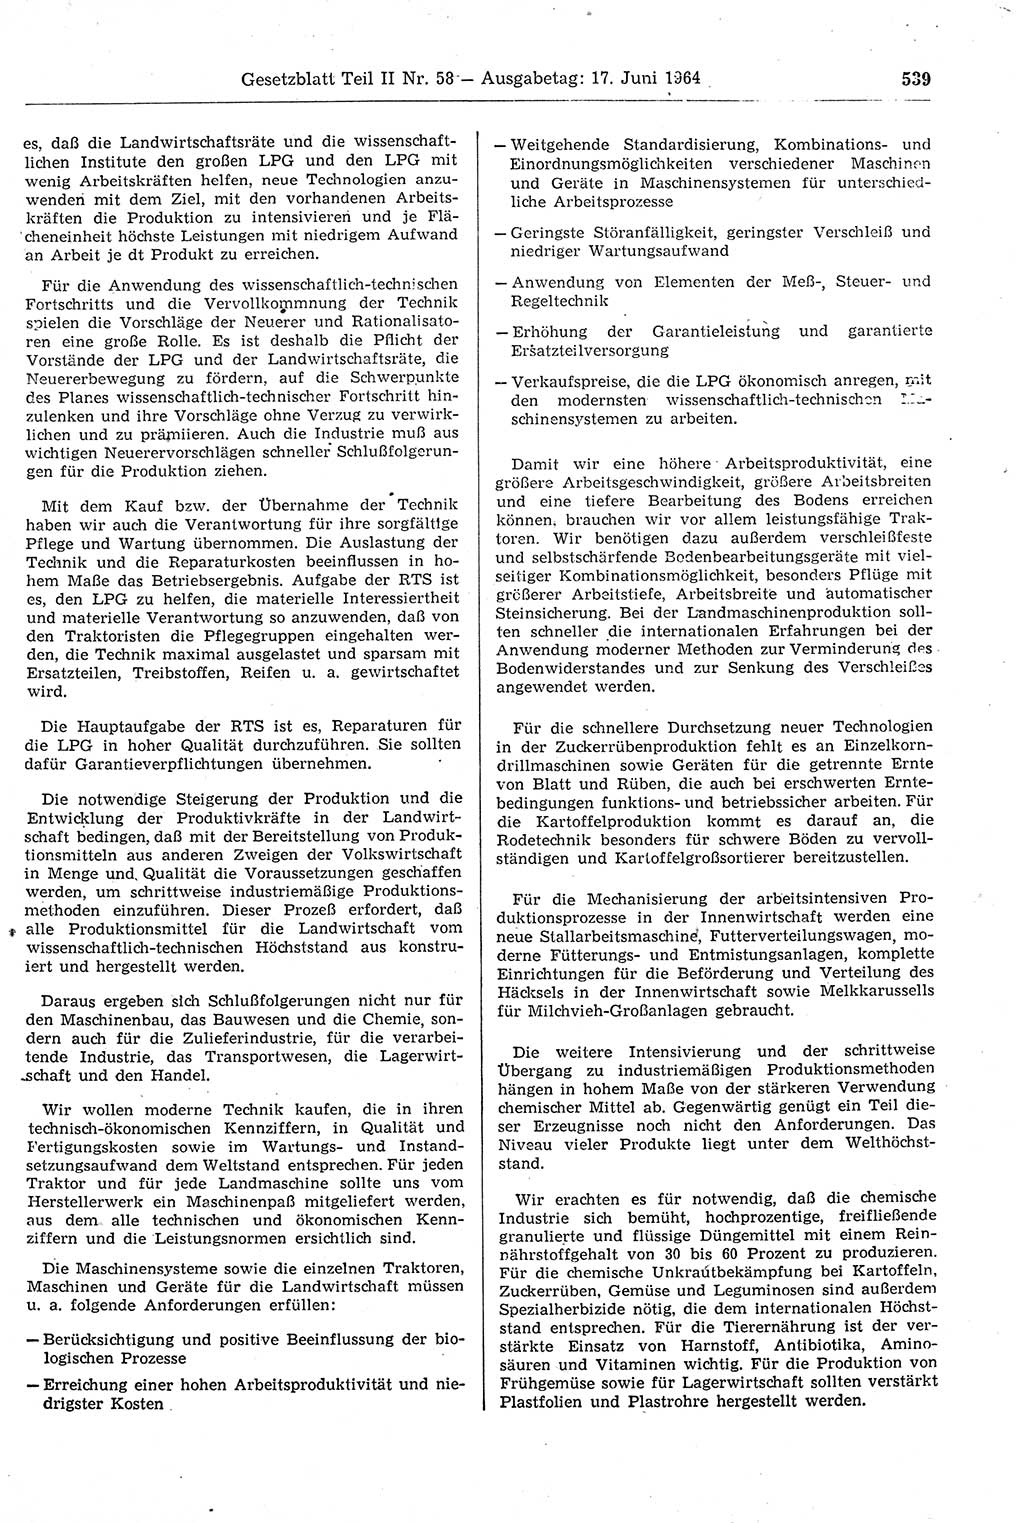 Gesetzblatt (GBl.) der Deutschen Demokratischen Republik (DDR) Teil ⅠⅠ 1964, Seite 539 (GBl. DDR ⅠⅠ 1964, S. 539)